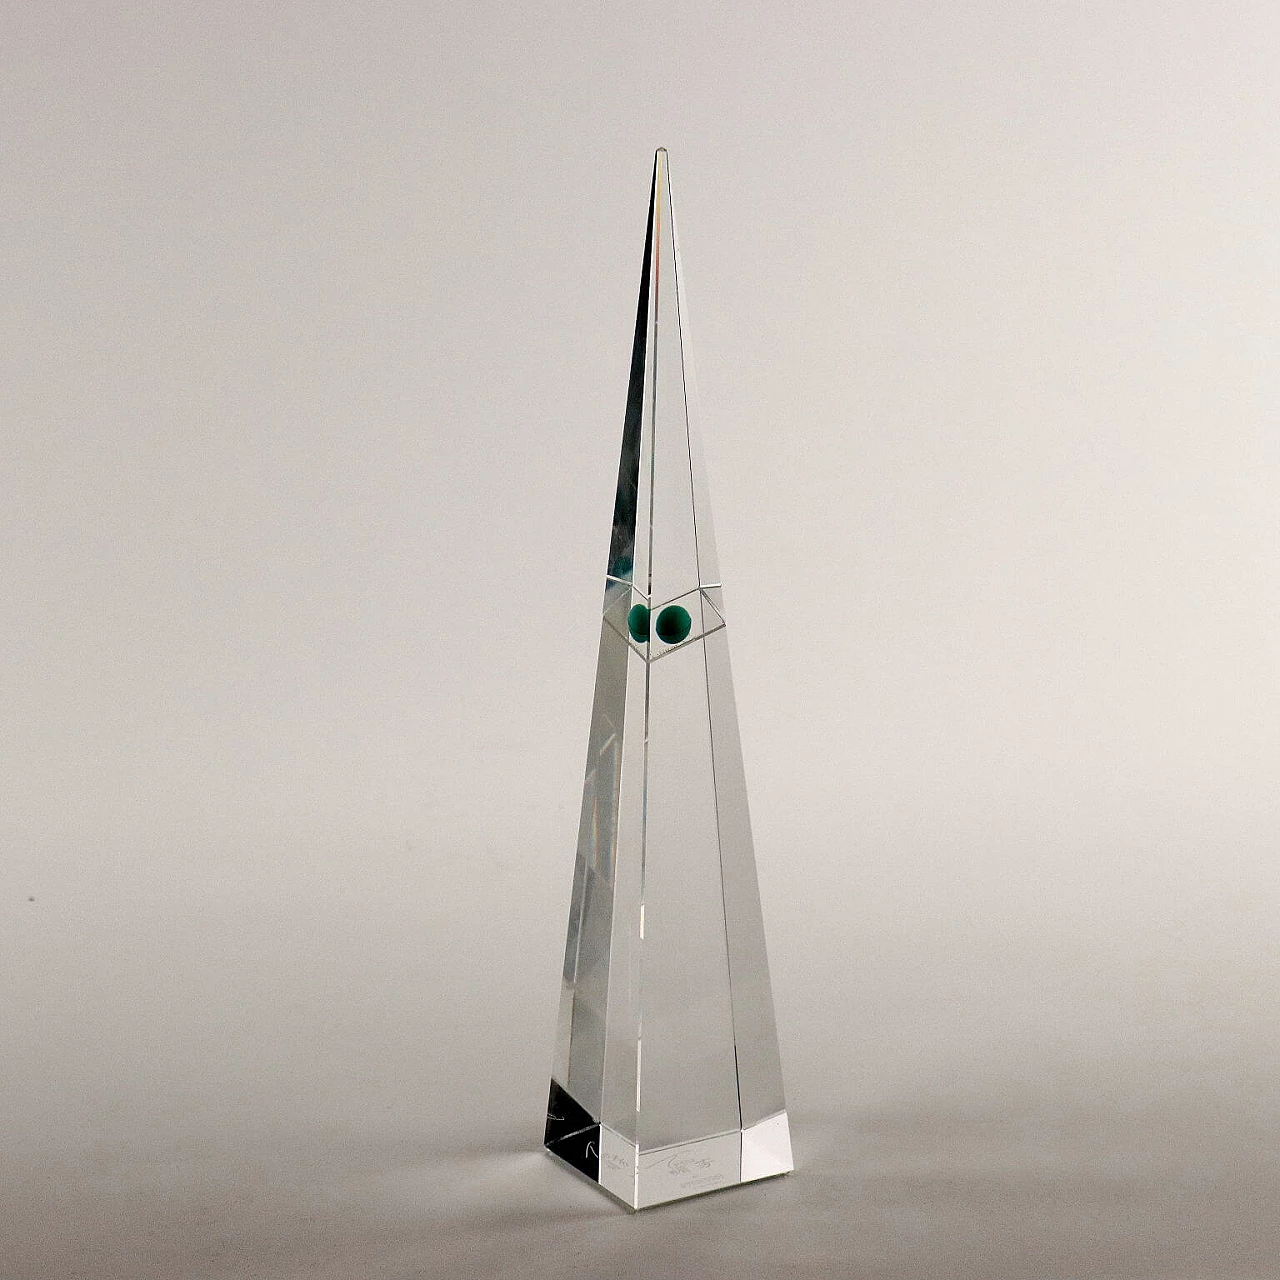 Hong Kong crystal tower obelisk by Tsang for Swarowski selection, 1997 1